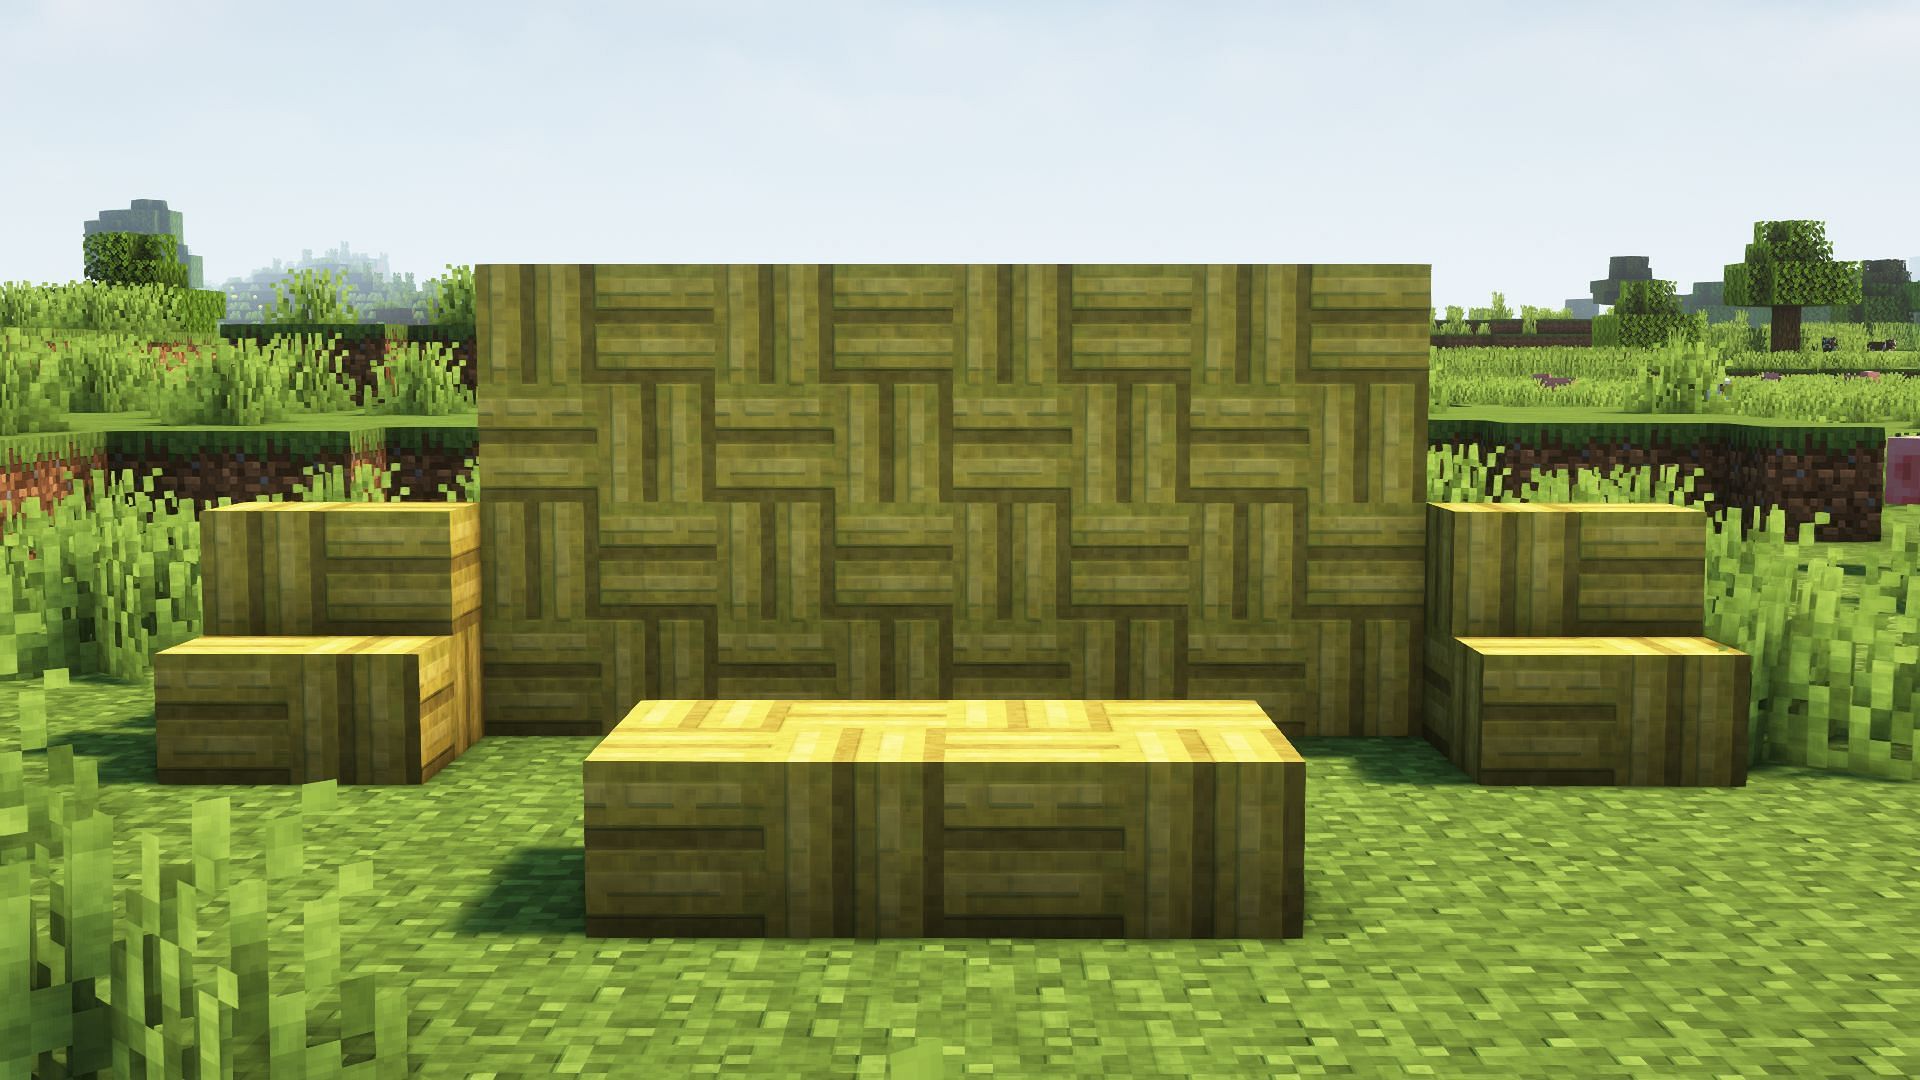 Bamboo mosaic blocks, stairs, and slabs. (Image via Mojang)